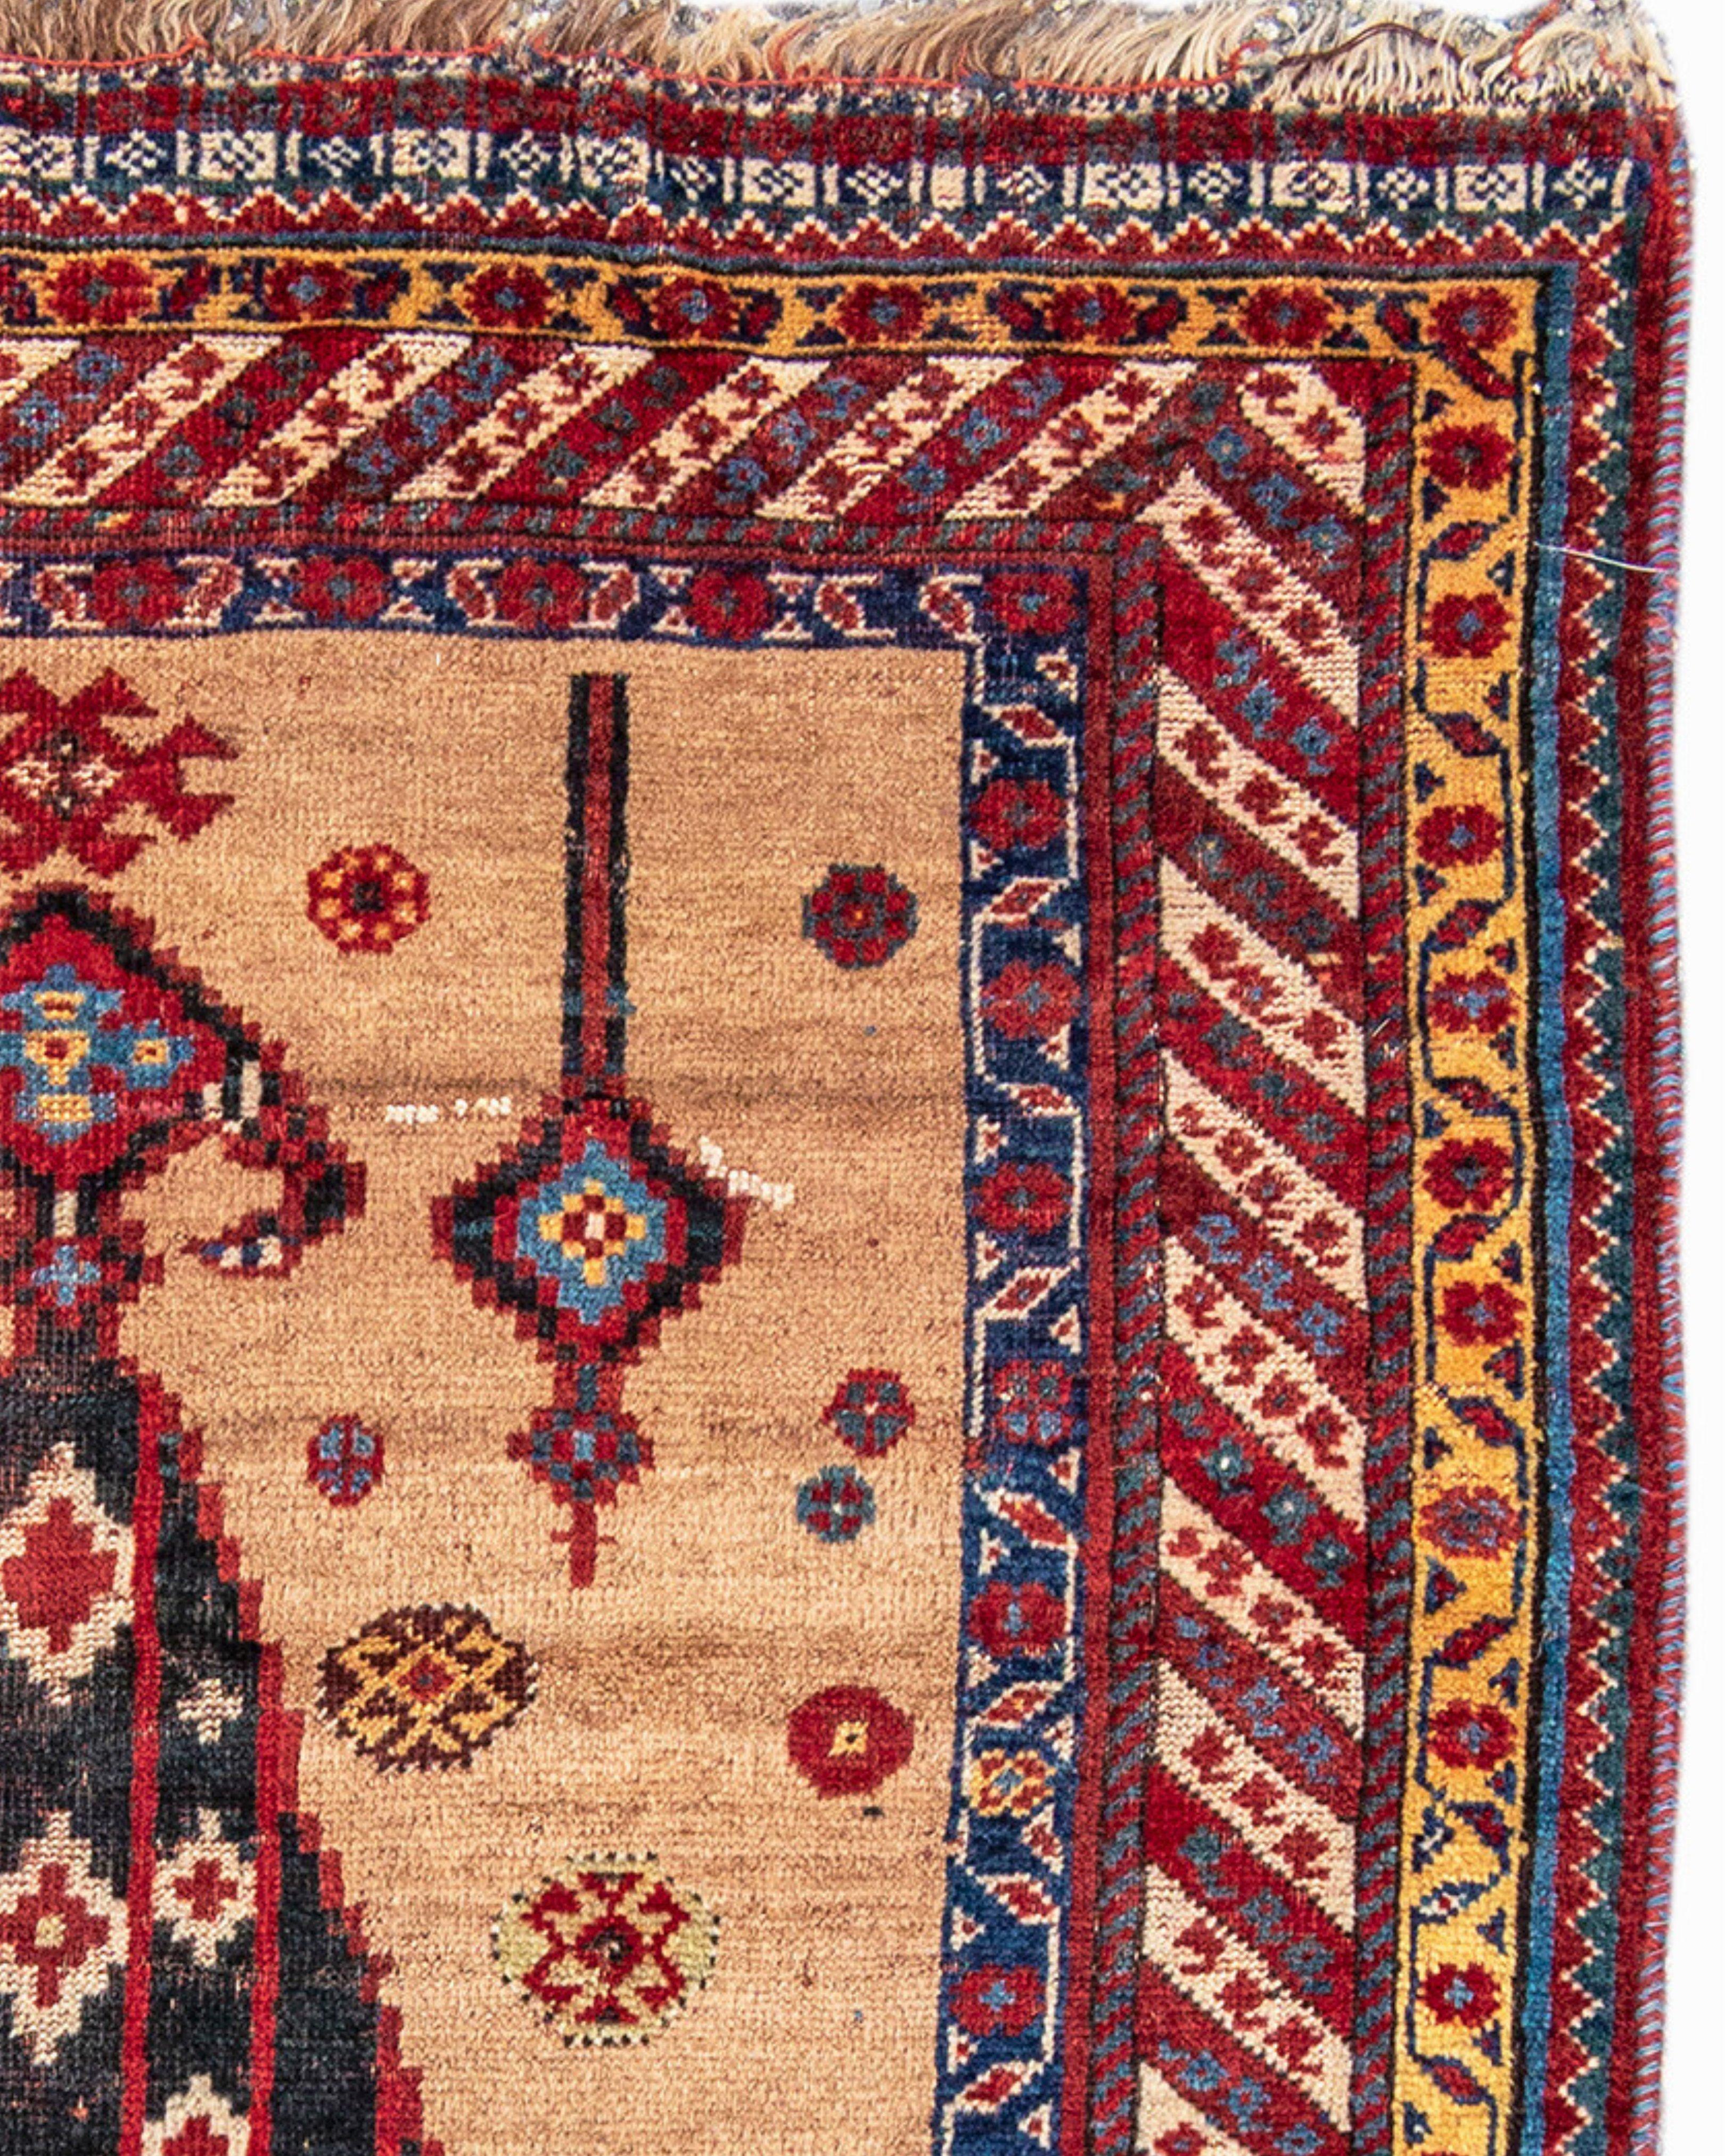 Antiker persischer Khamseh-Teppich, spätes 19. Jahrhundert

Für einen Teppich, der von einem der konföderierten Stämme der Khamseh-Konföderation gewebt wurde, ist dieses Design angeblich selten, wenn nicht sogar einzigartig. Das mit einem Grund aus